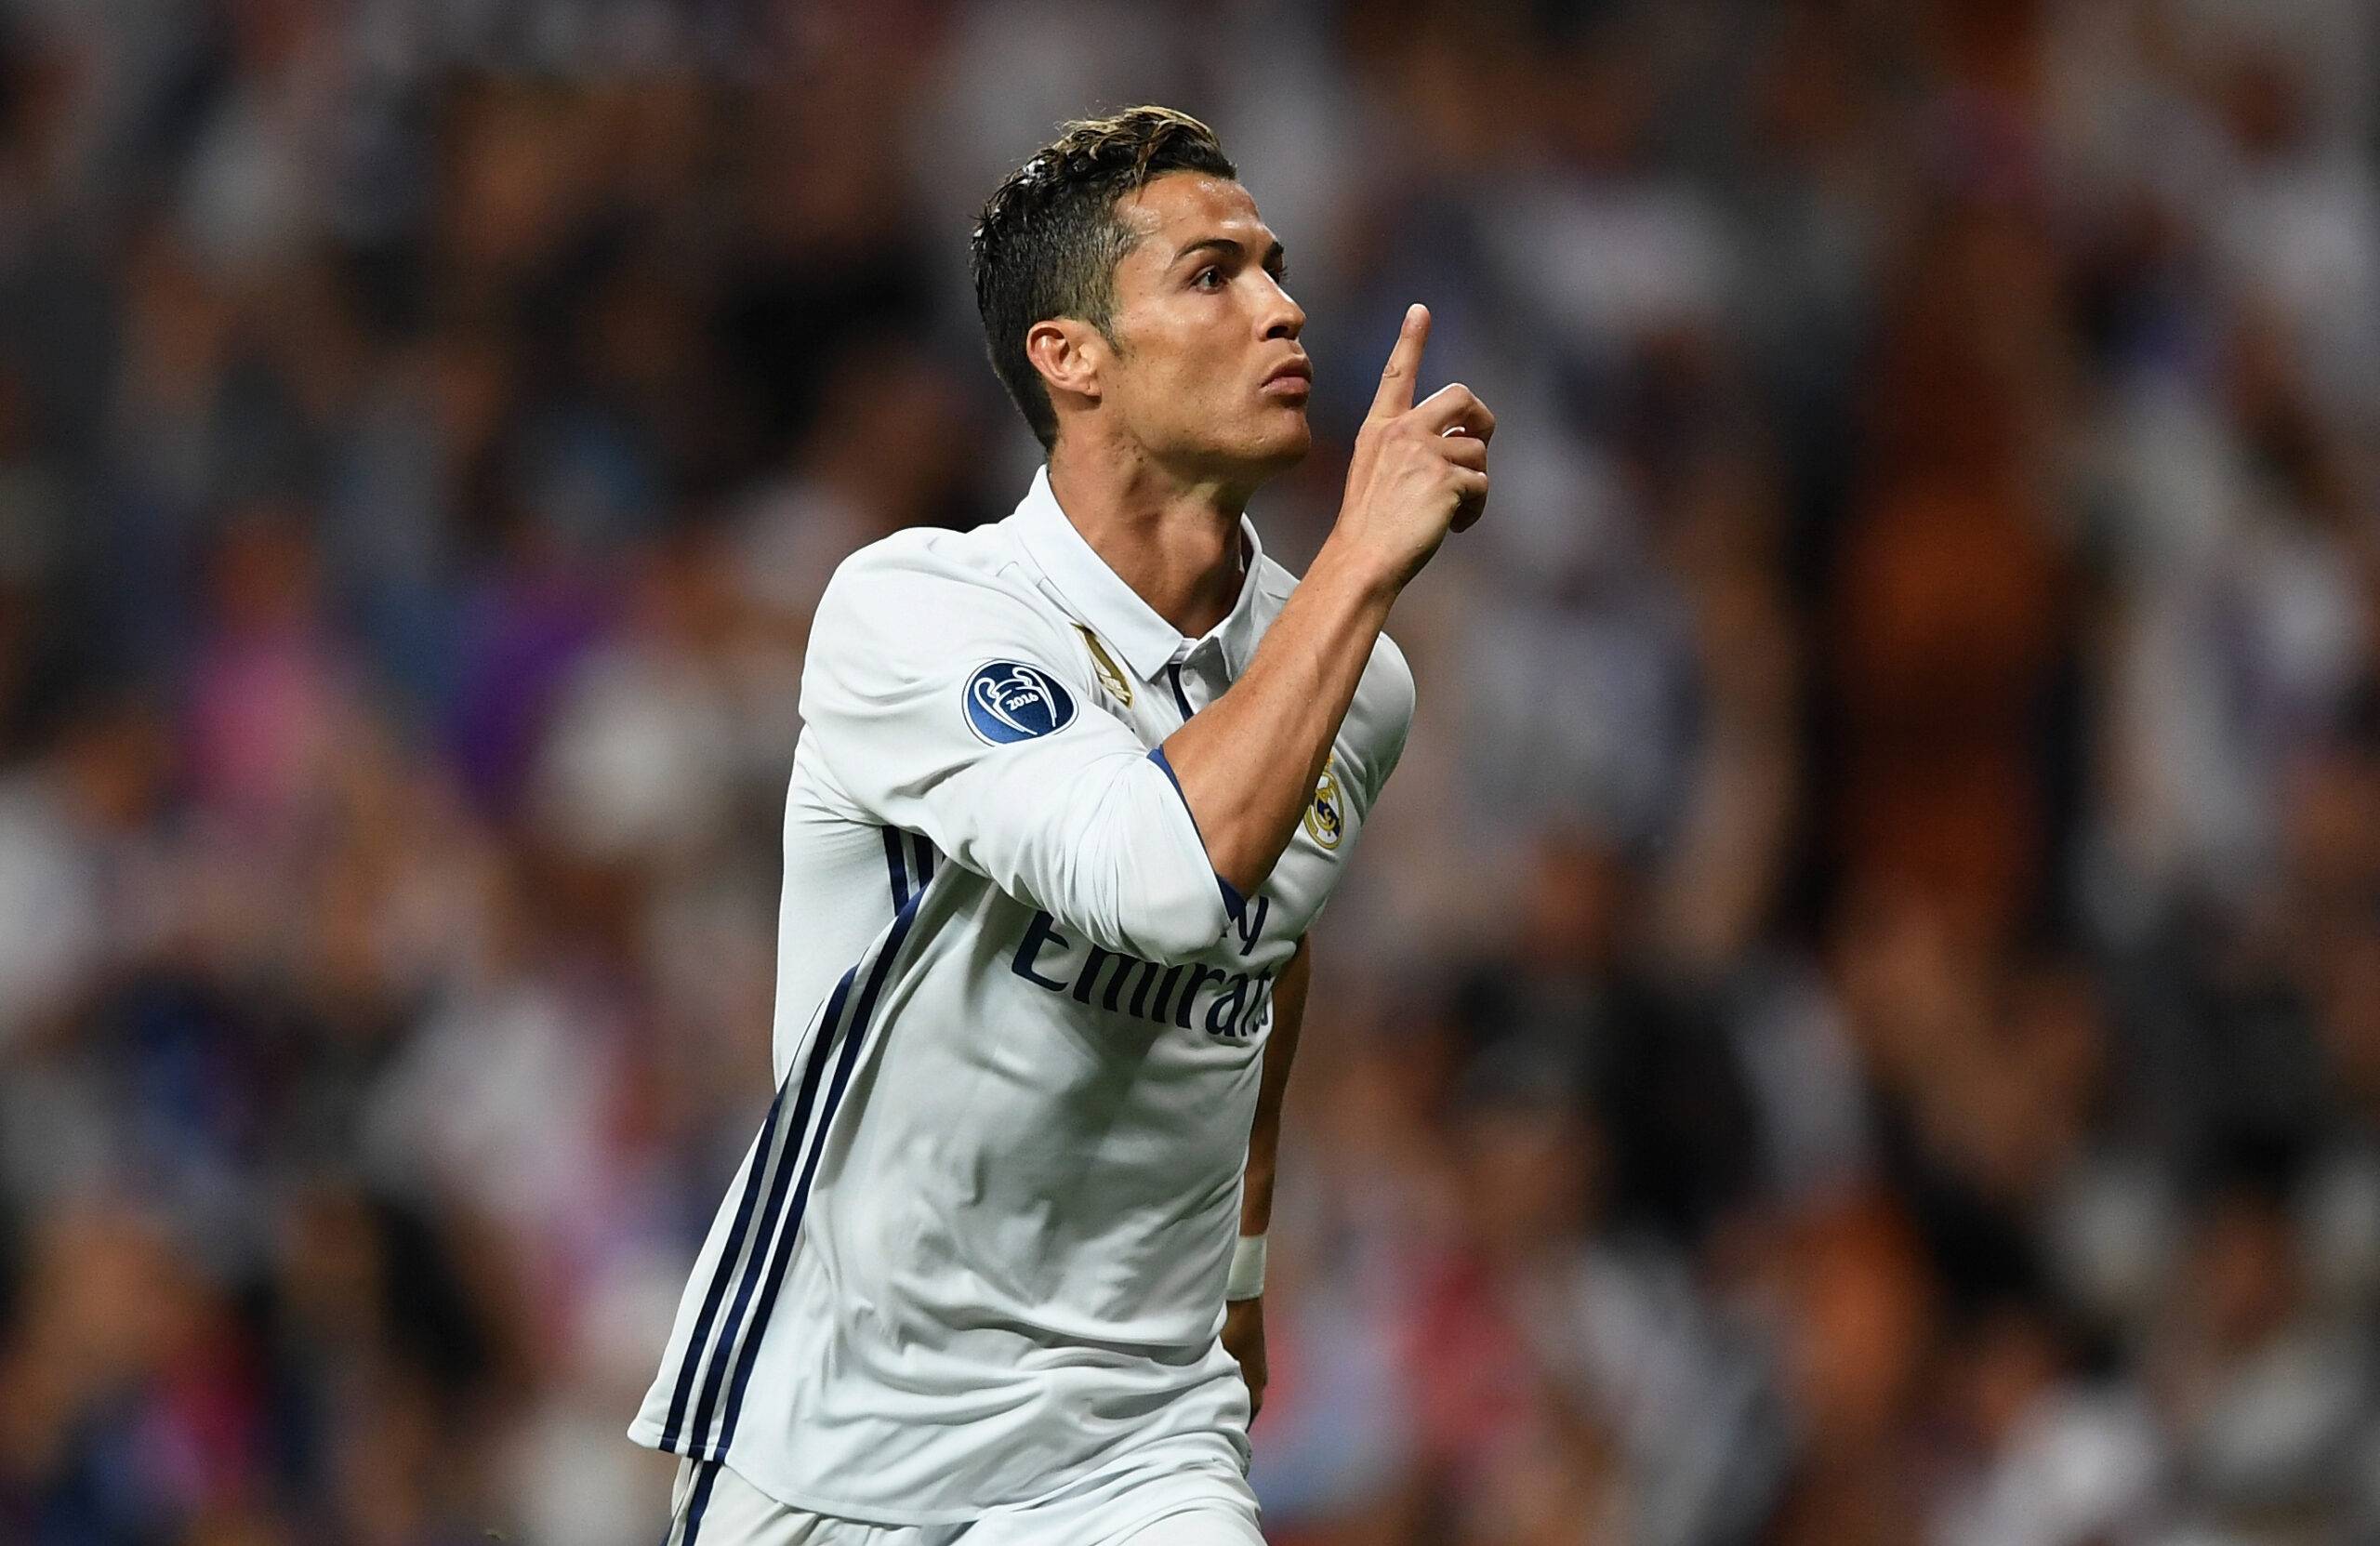 Cristiano Ronaldo celebrates a goal